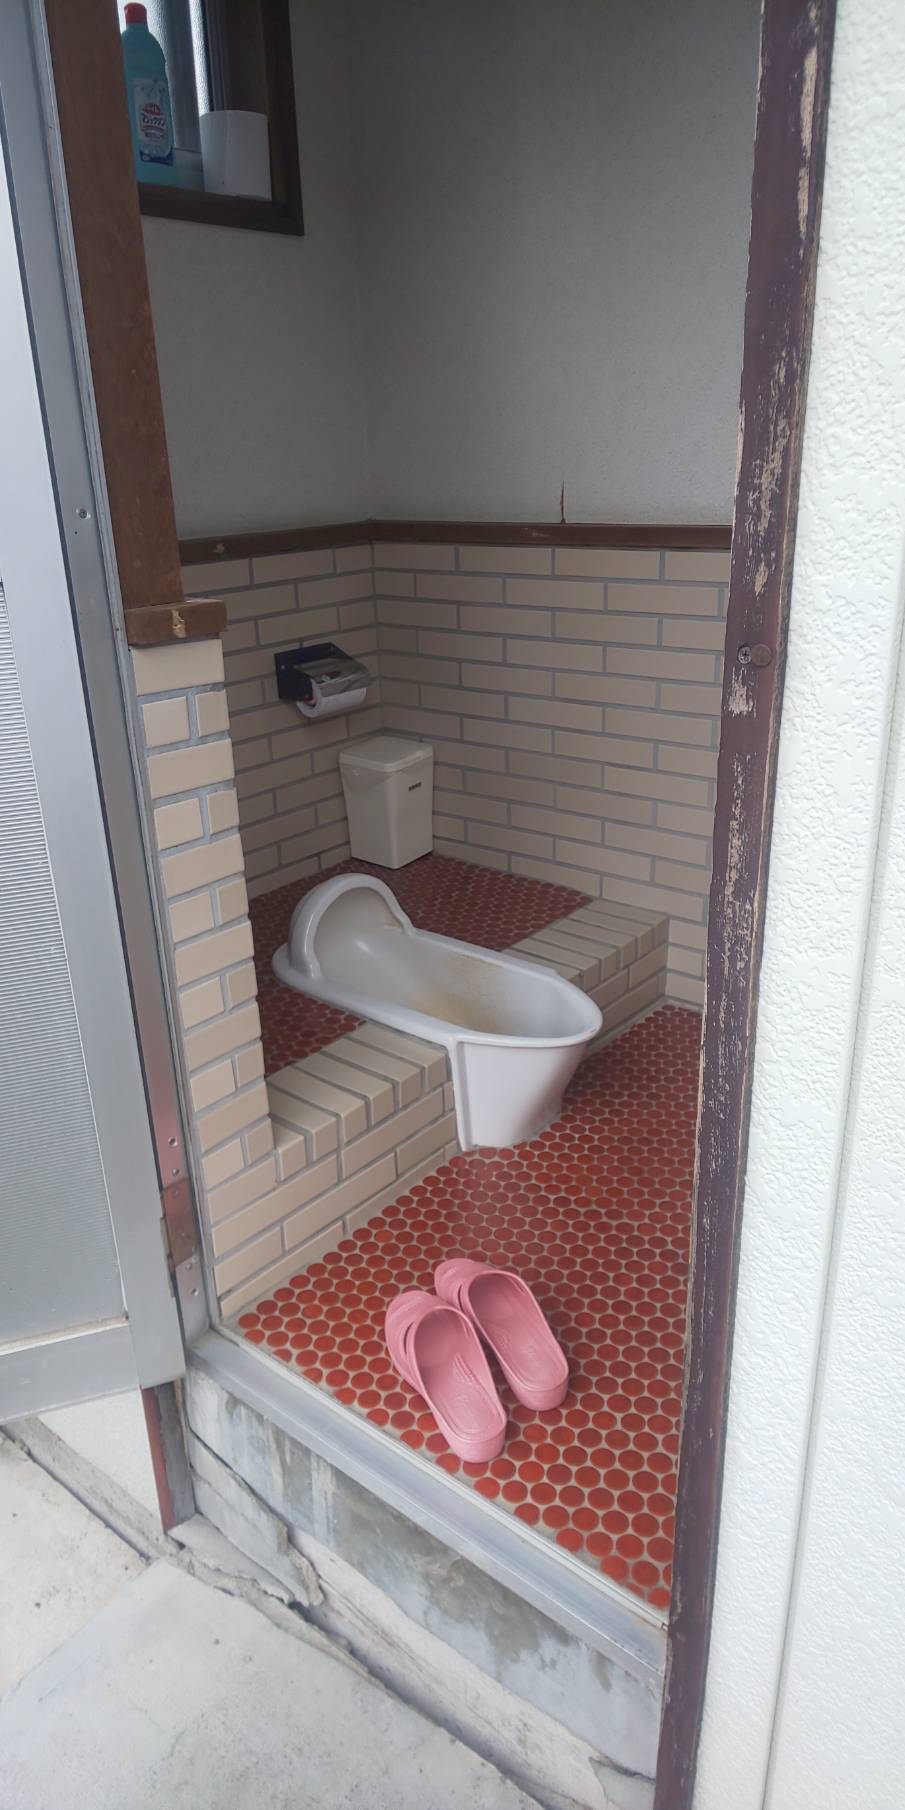 ☆汲み取り式トイレ改修工事ご依頼☆ 前橋市の注文住宅ならアカギホーム